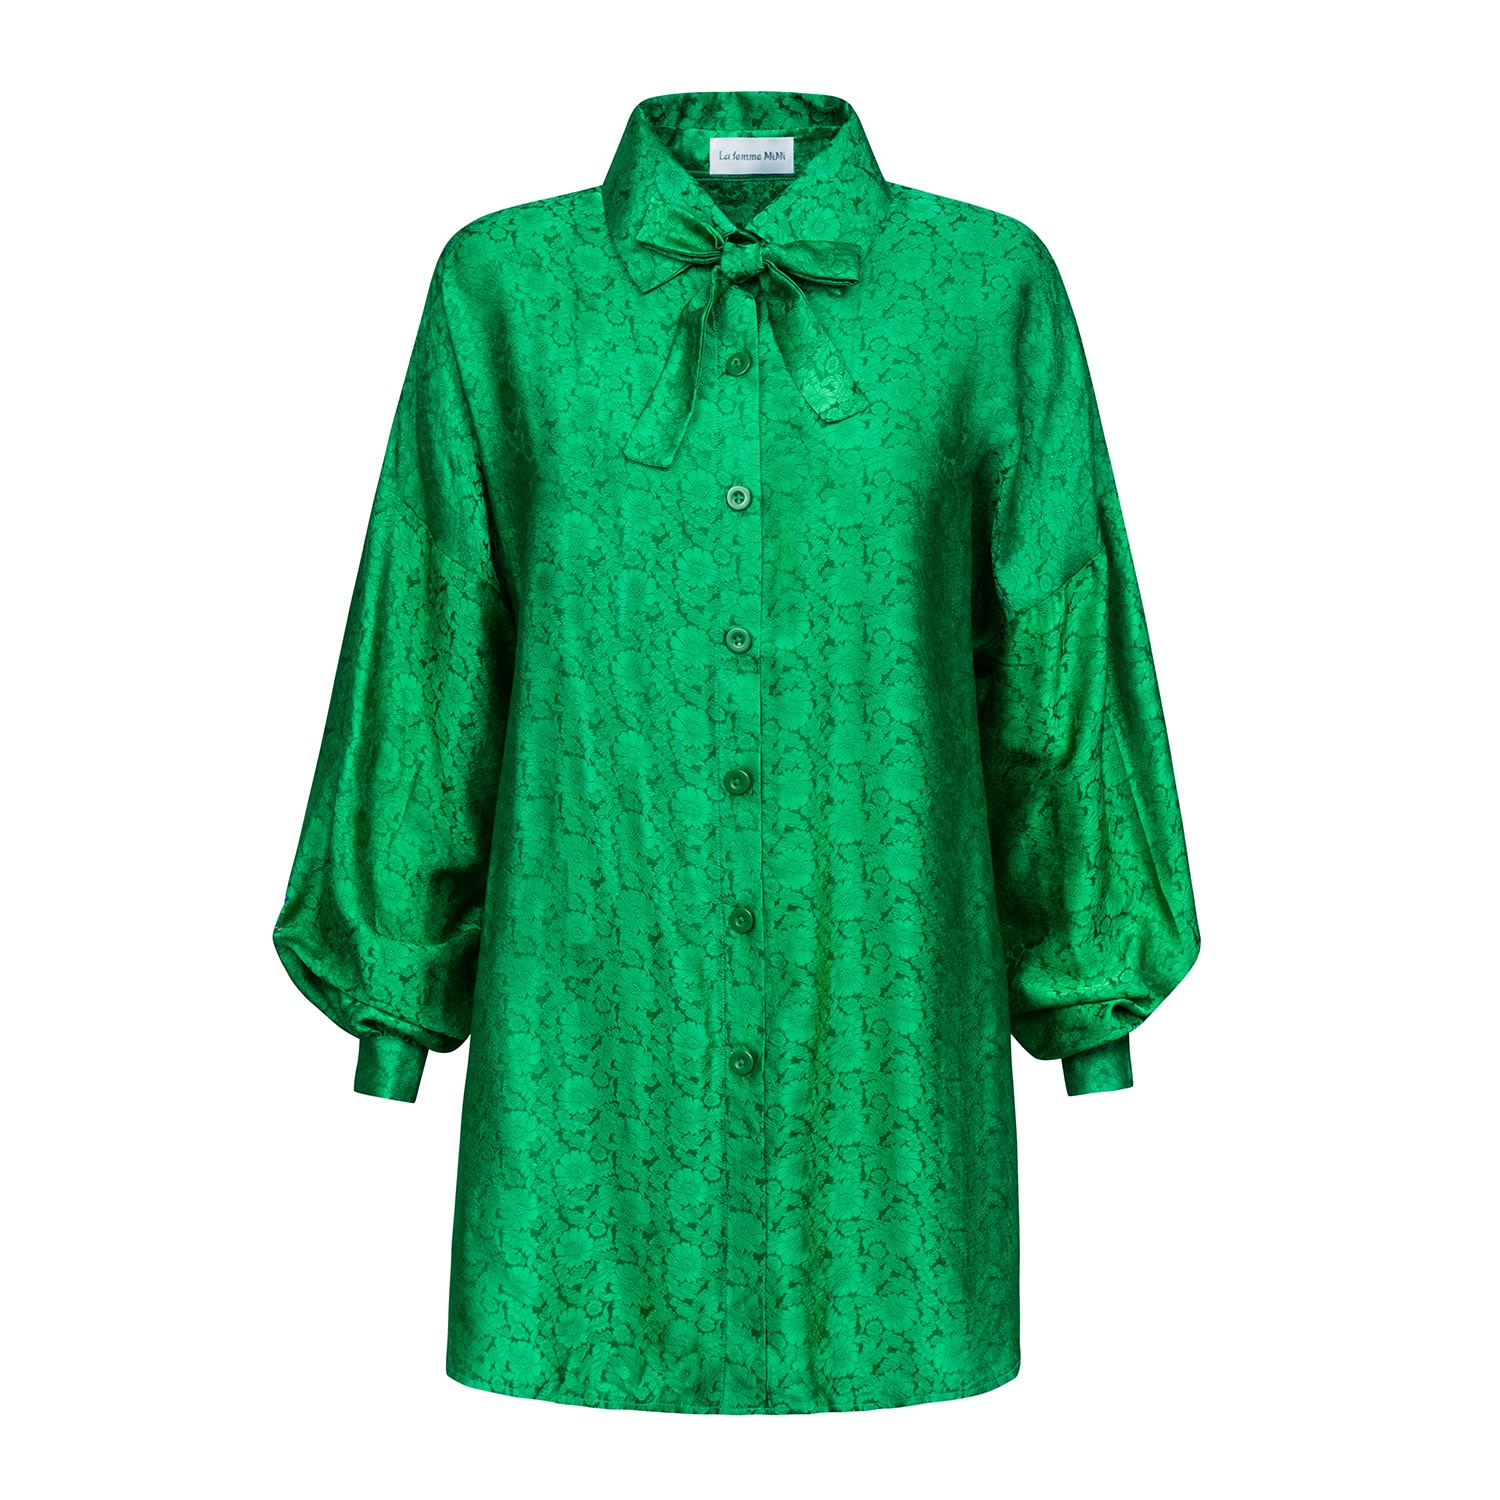 Women’s Silk Blouse In Green La Femme Mimi